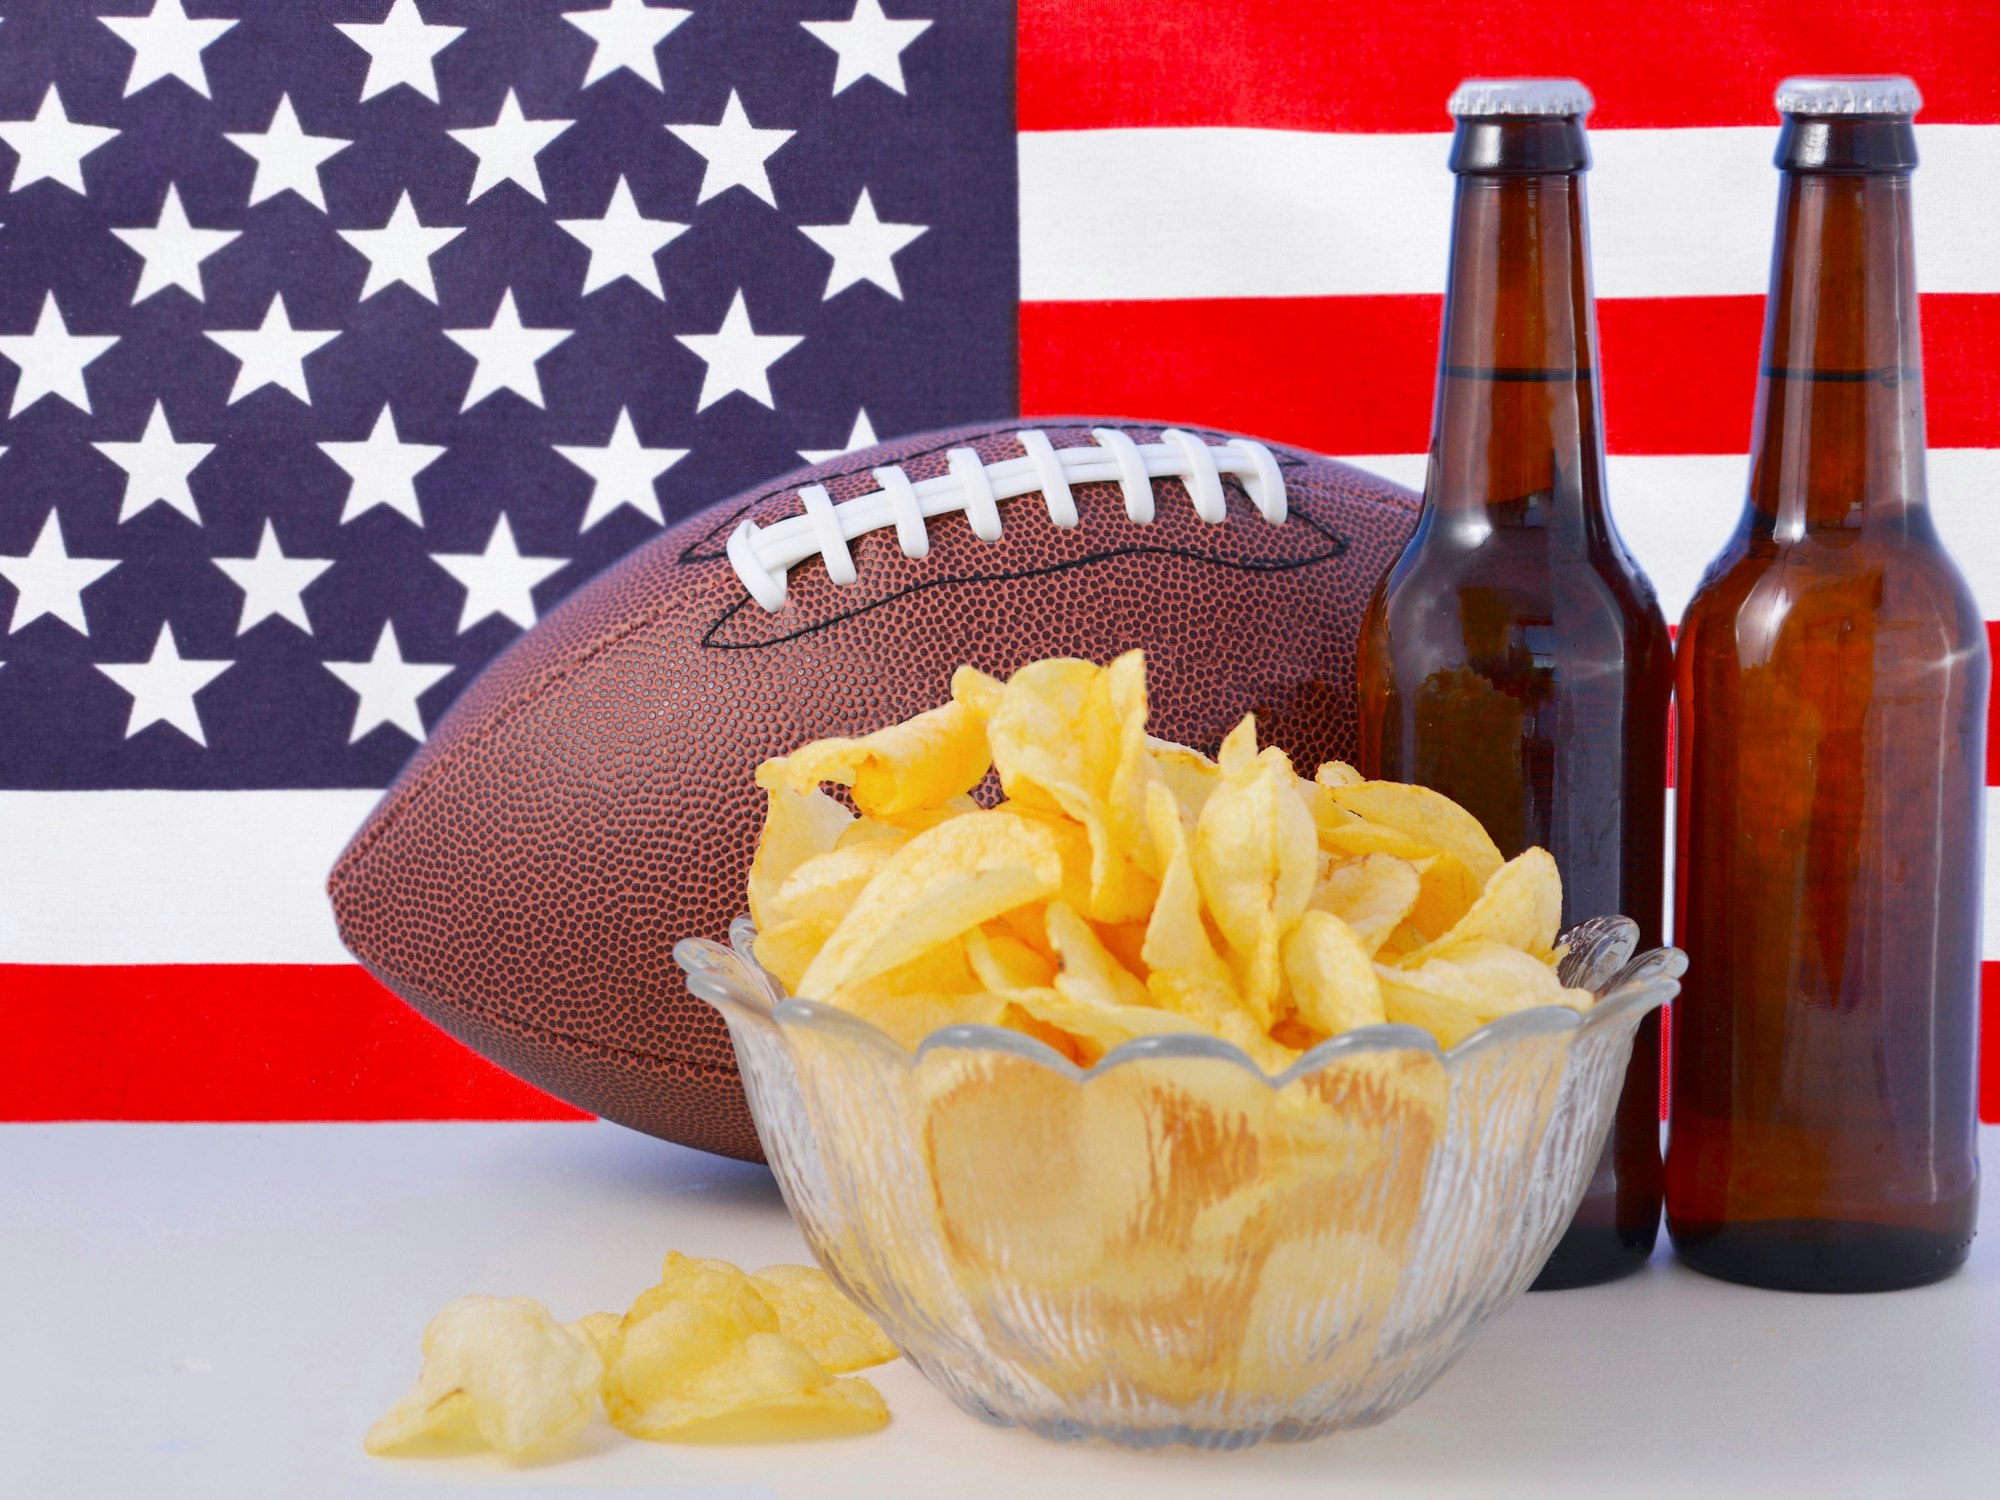 Chips und Bier sind am Finaltag des Super Bowls sehr beliebt.